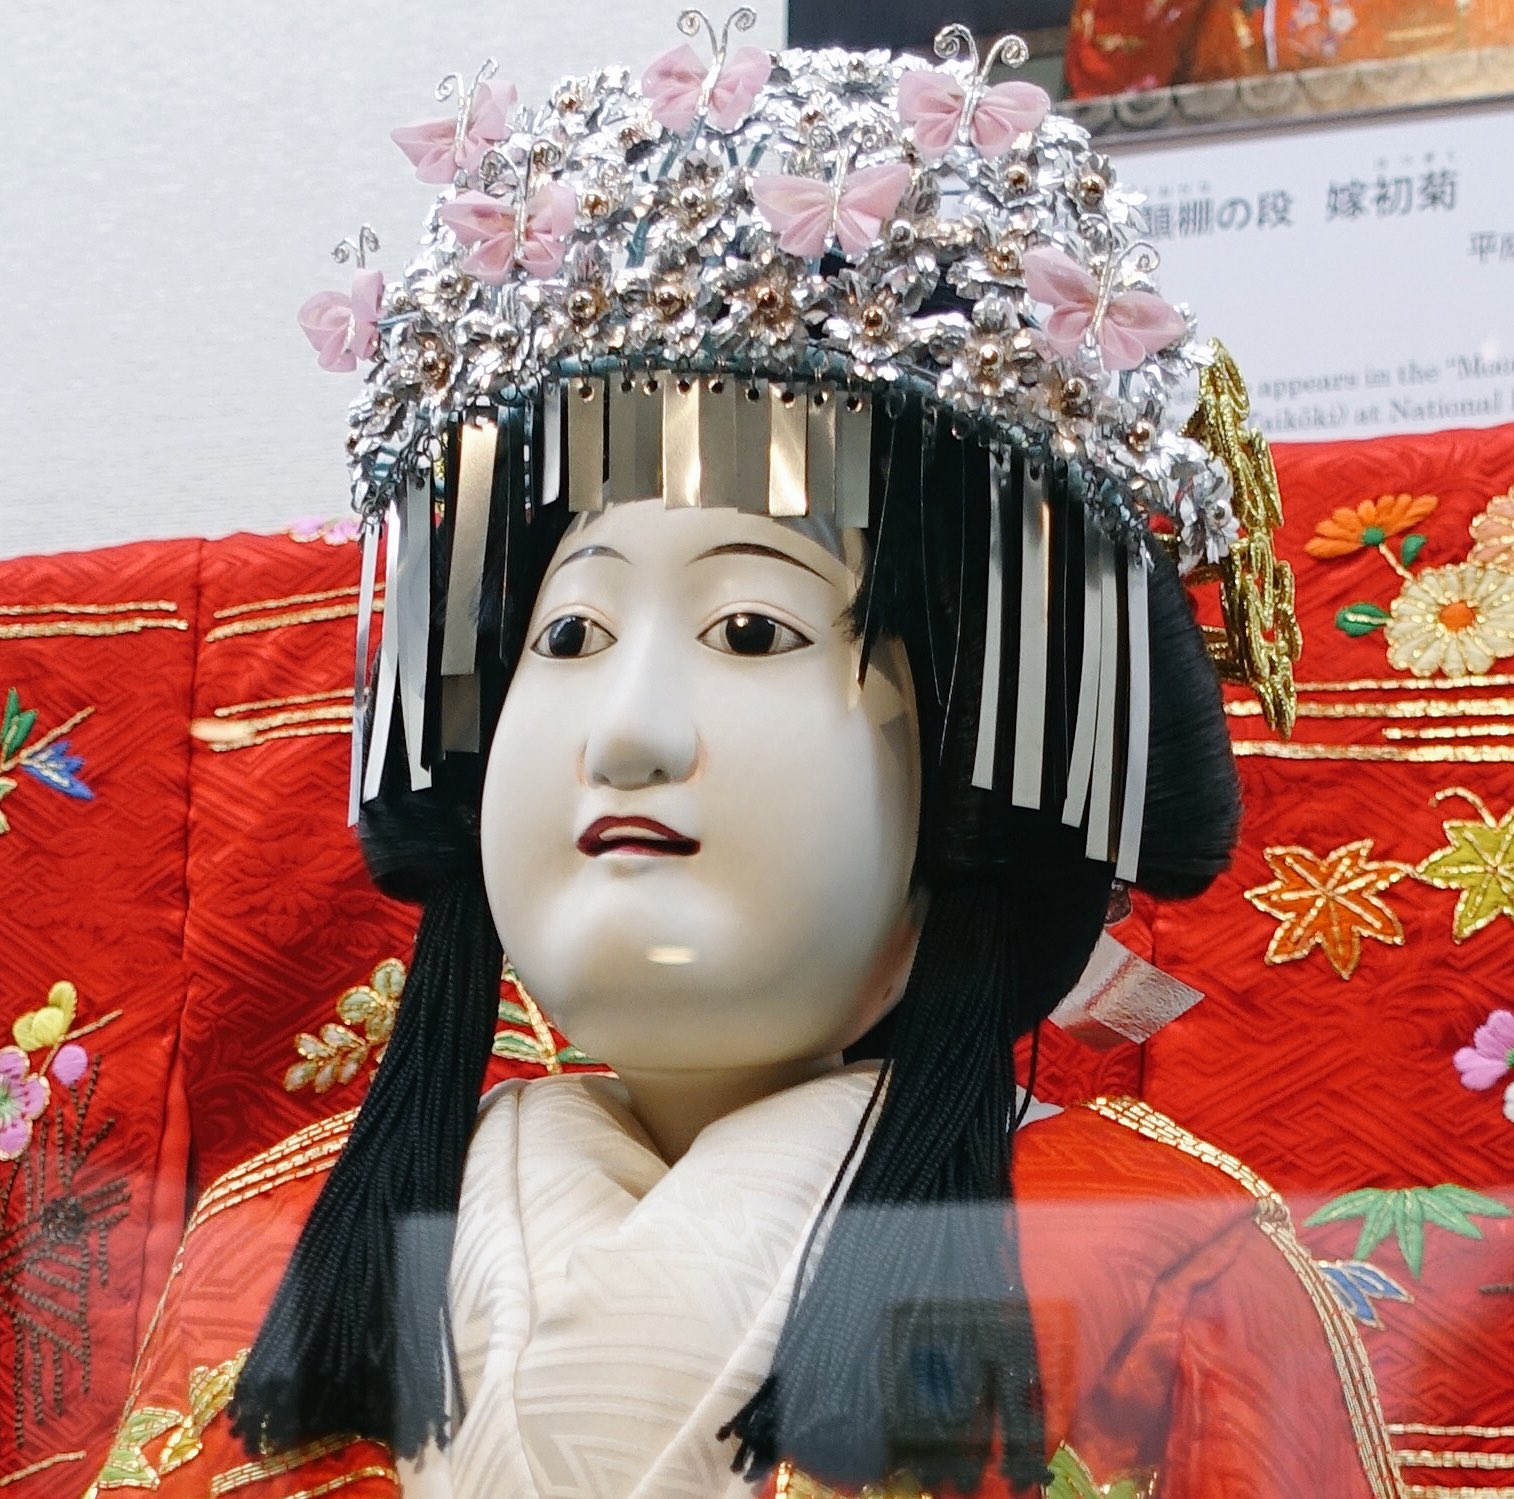 井嶋ナギ : "絵本太功記の初菊の人形。赤姫の衣装は、やはり